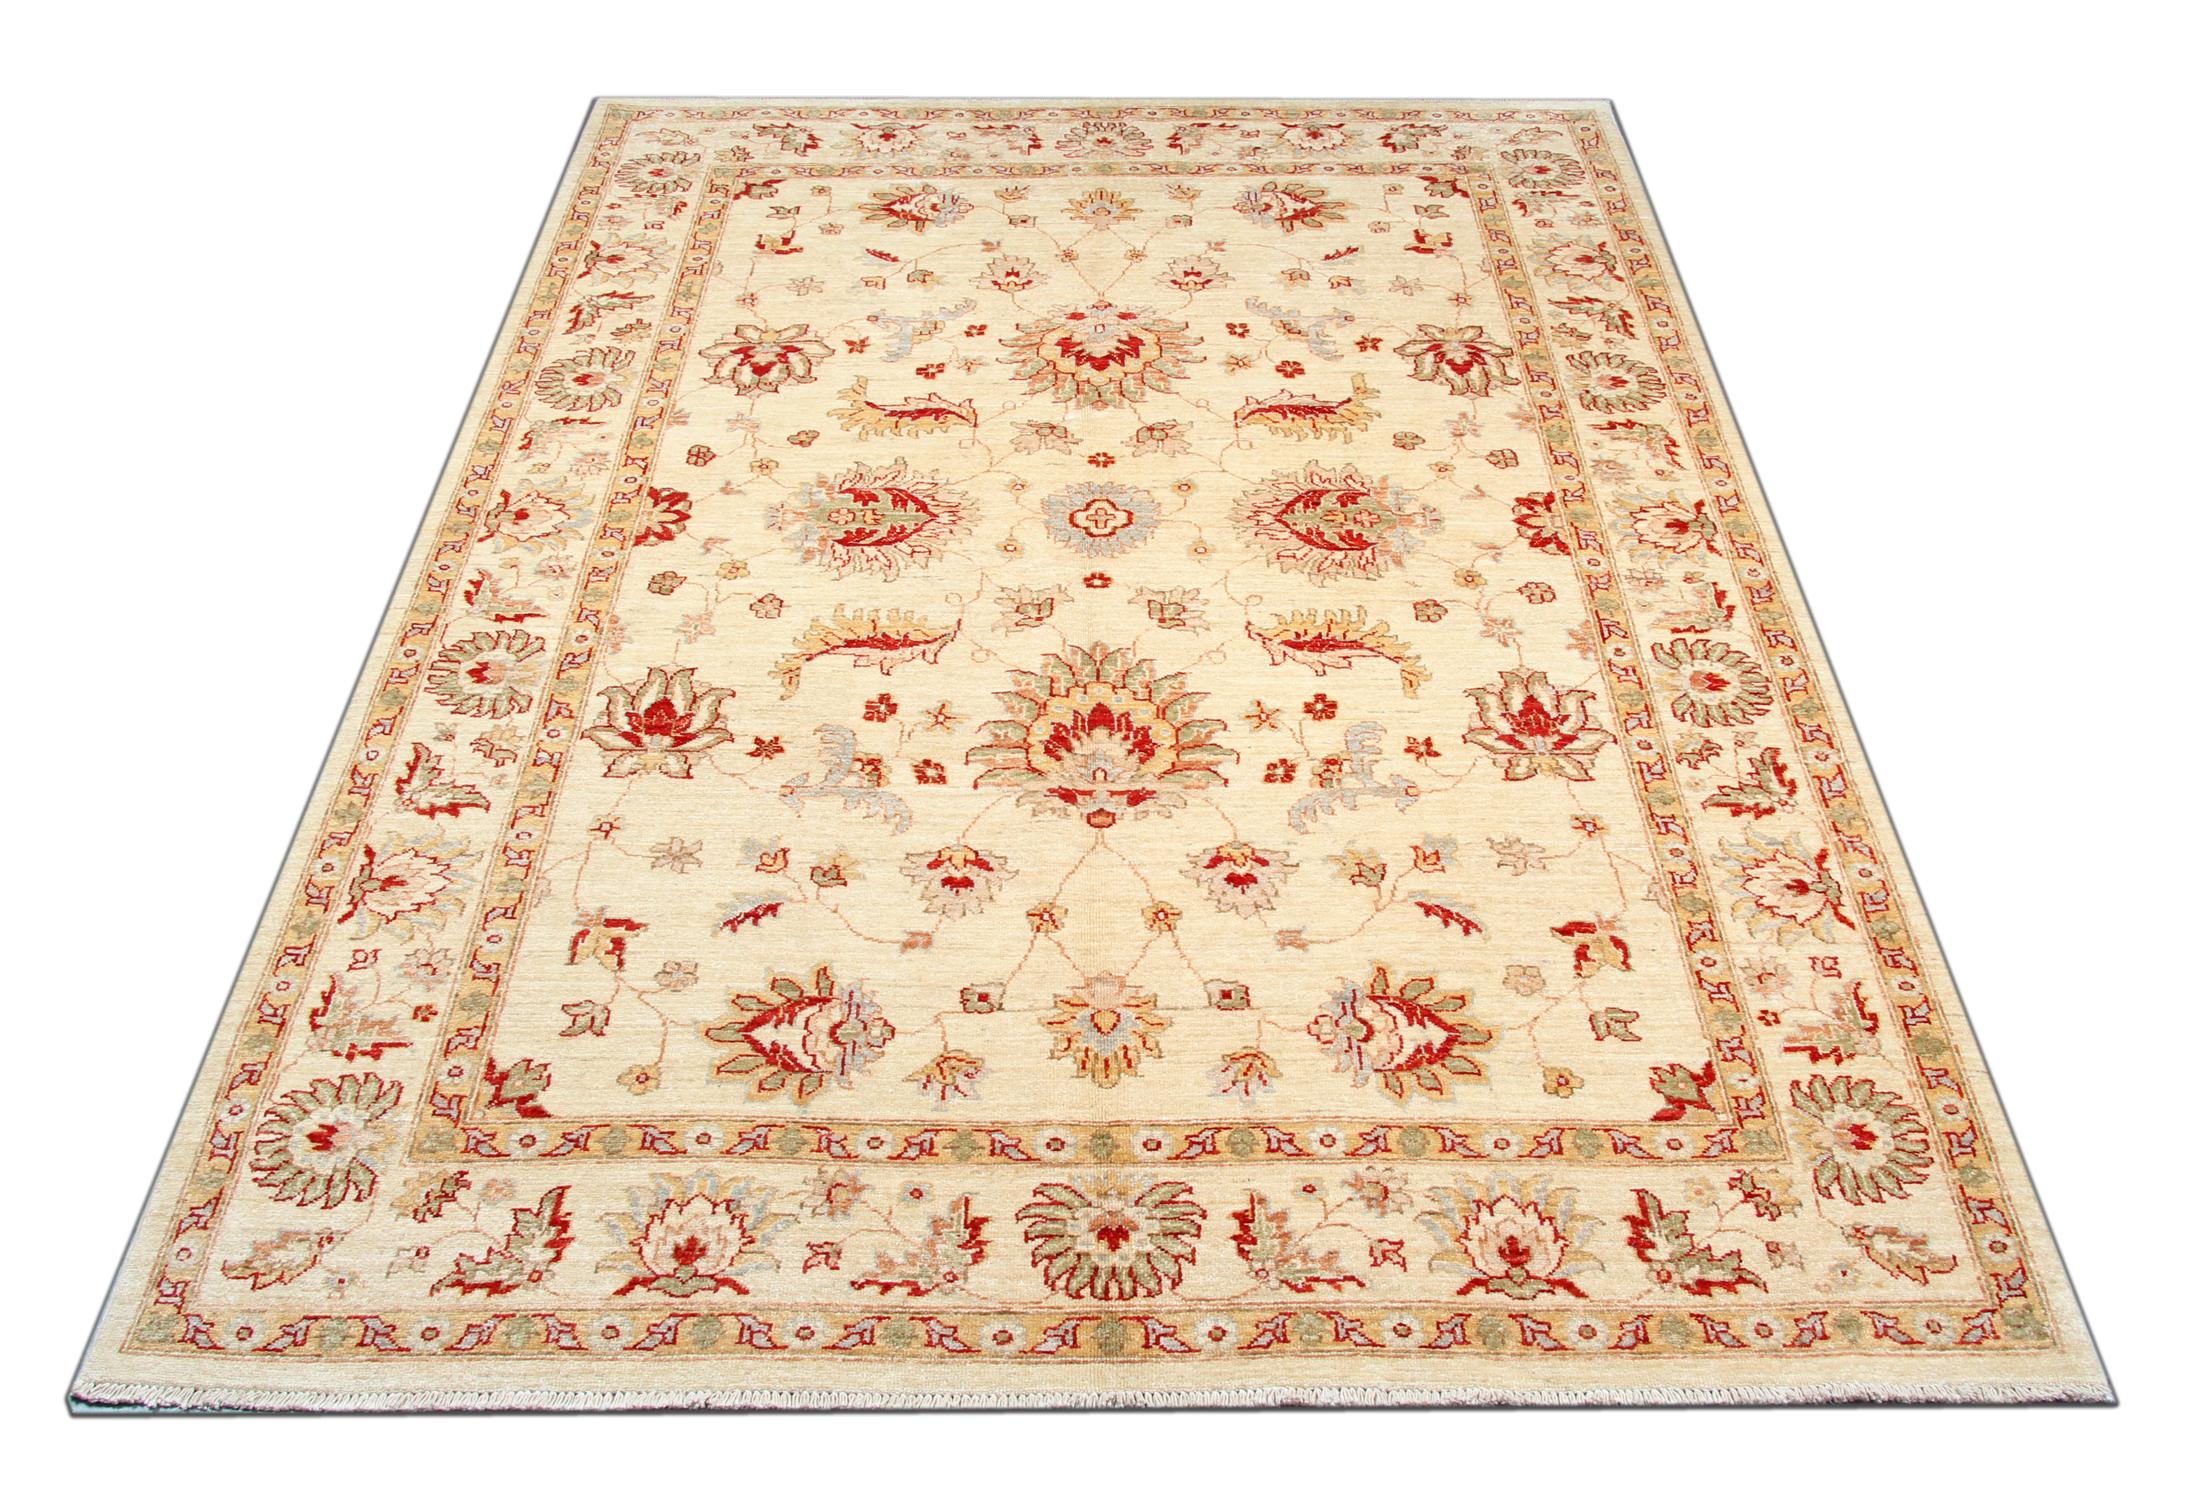 Ce tapis est un tapis Ziegler Sultanabad fabriqué sur nos métiers à tisser par nos maîtres tisserands en Afghanistan. Il est fait à la main avec des teintures végétales entièrement naturelles et de la laine filée à la main. Grâce à sa conception à